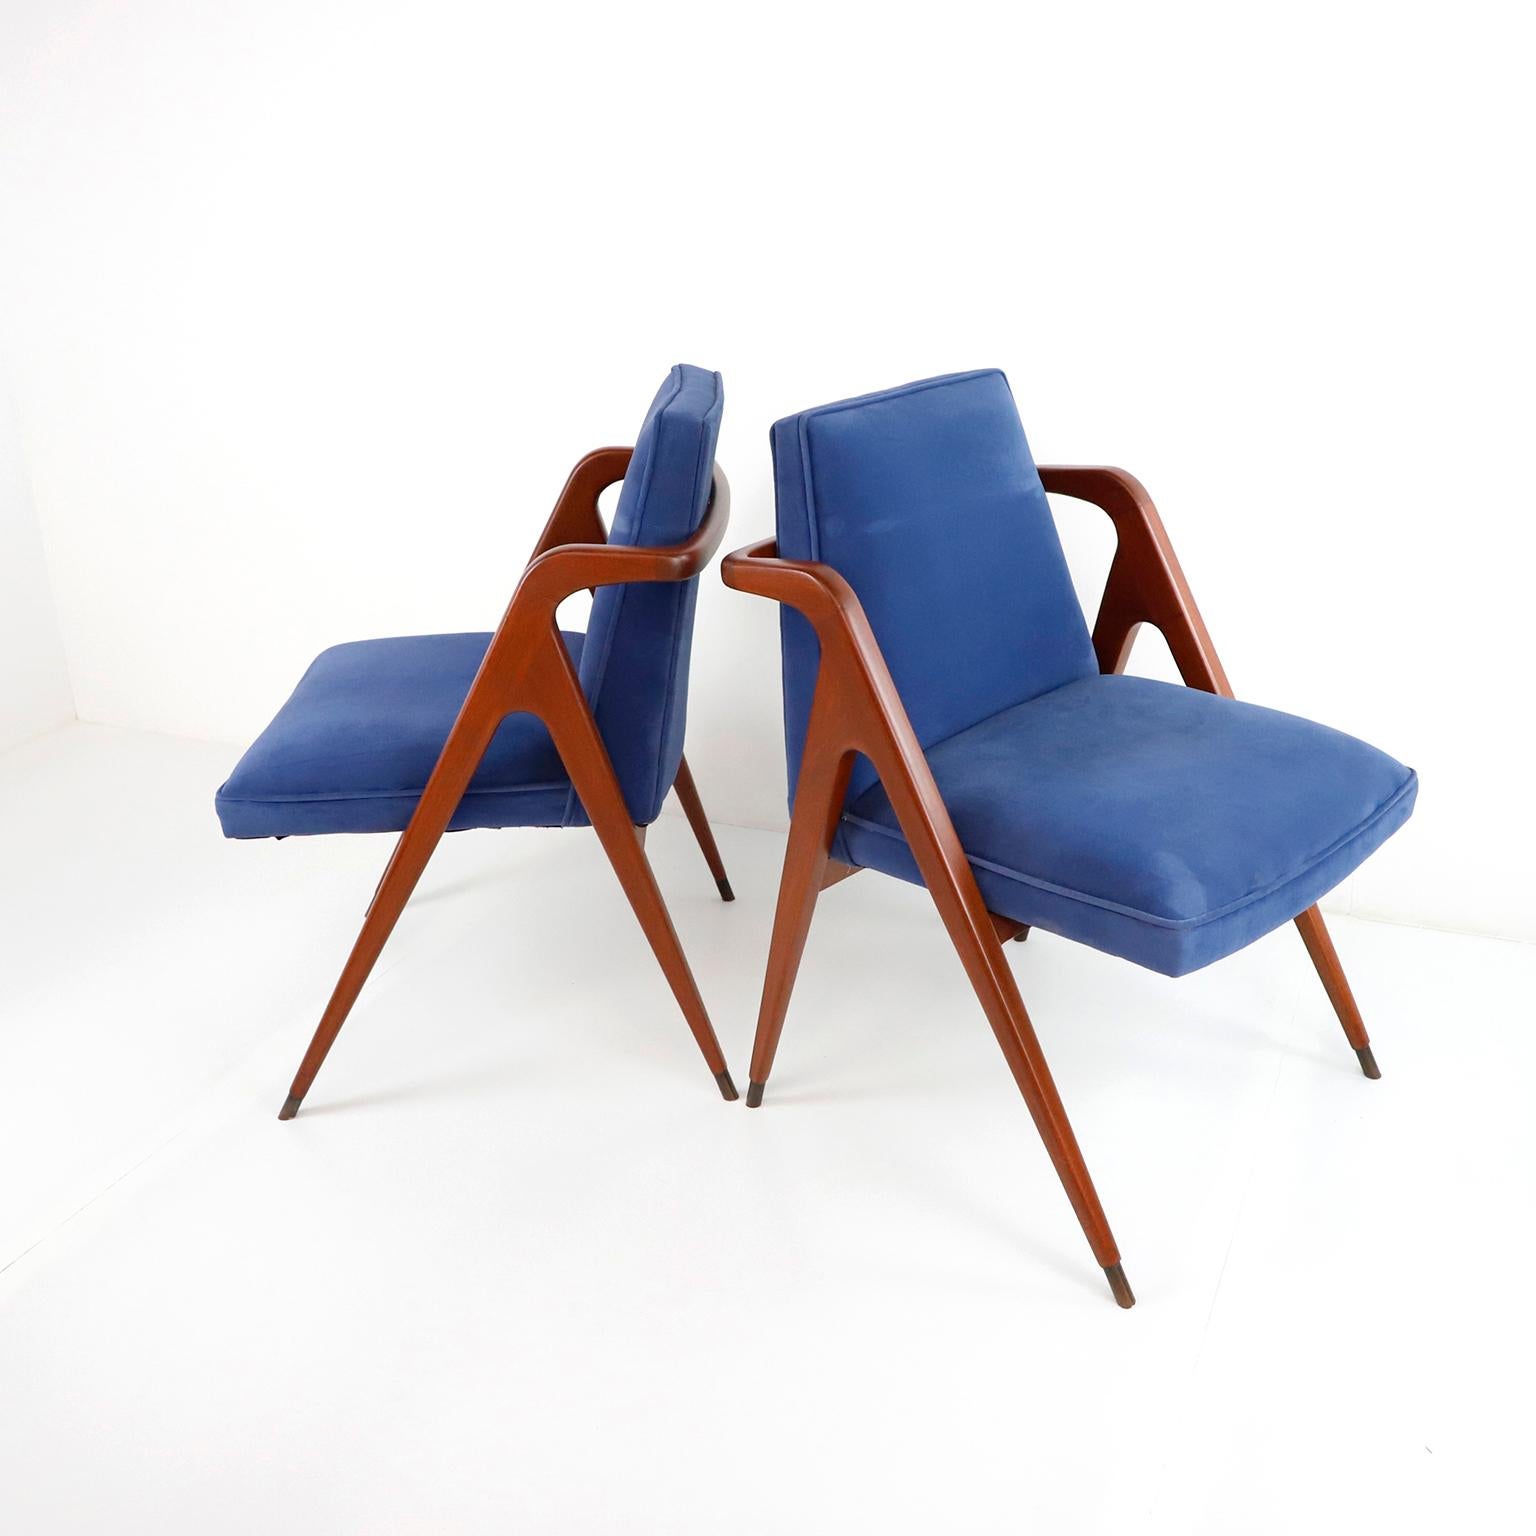 Um 1960 bieten wir diesen Satz von 4 original mexikanischen Stühlen aus der Jahrhundertmitte an, die von Eugenio Escudero für D'Escudero, S.A. entworfen wurden. Dieser atemberaubende Stuhl hat einen fantastischen Mahagoniholzrahmen mit skulpturalen,